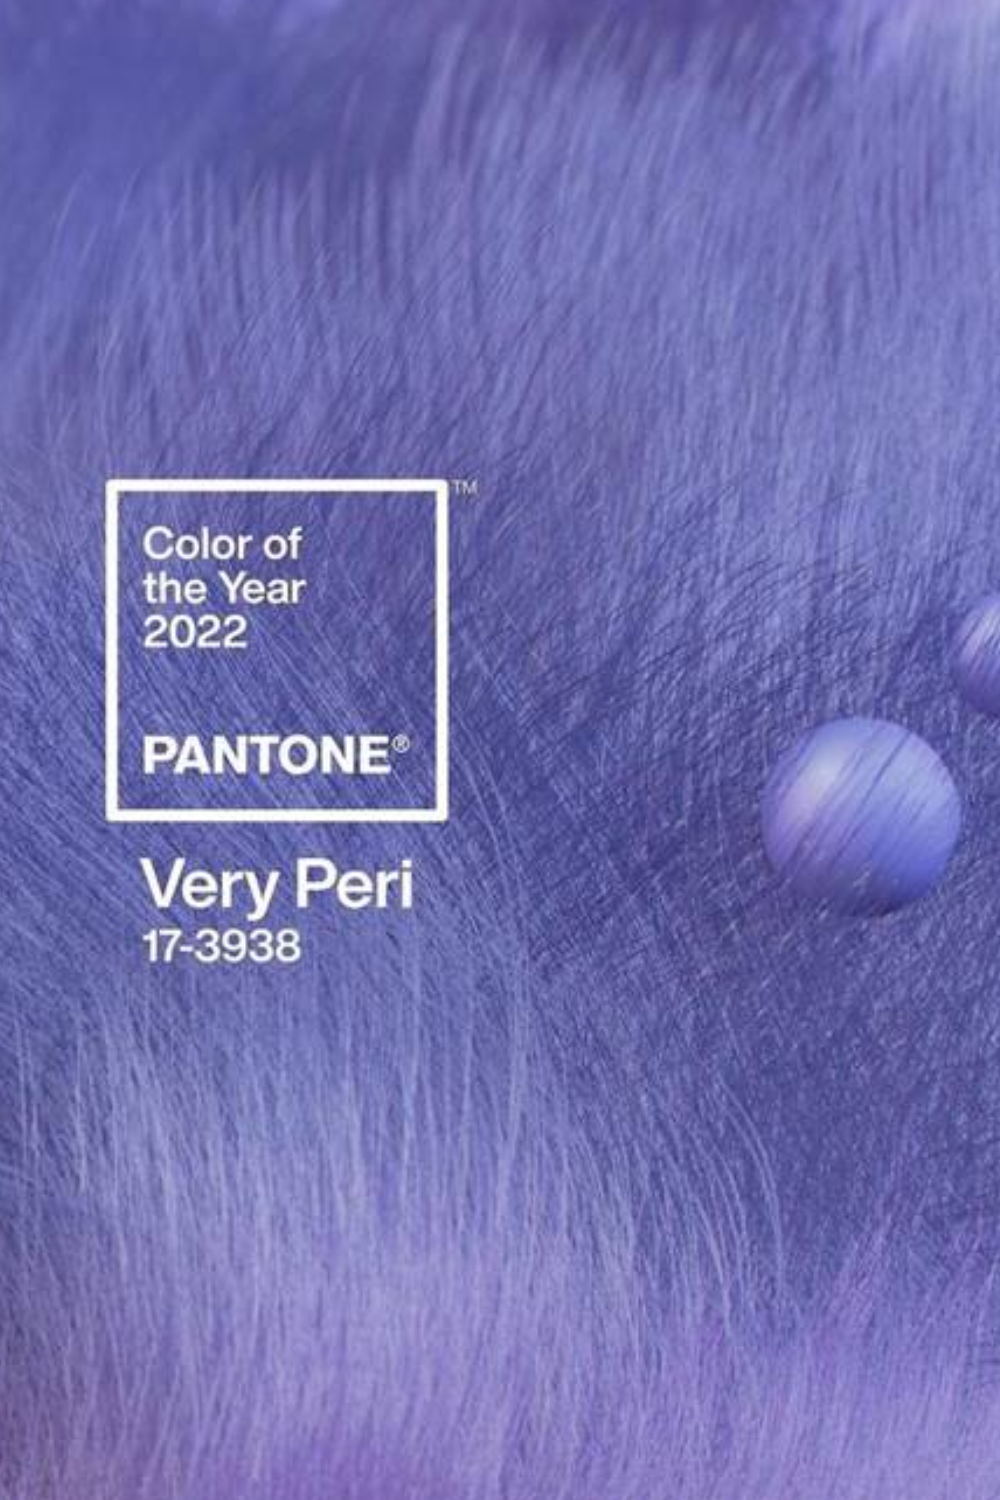 Lo que debes saber sobre el Color del año 2022: “Very Peri”